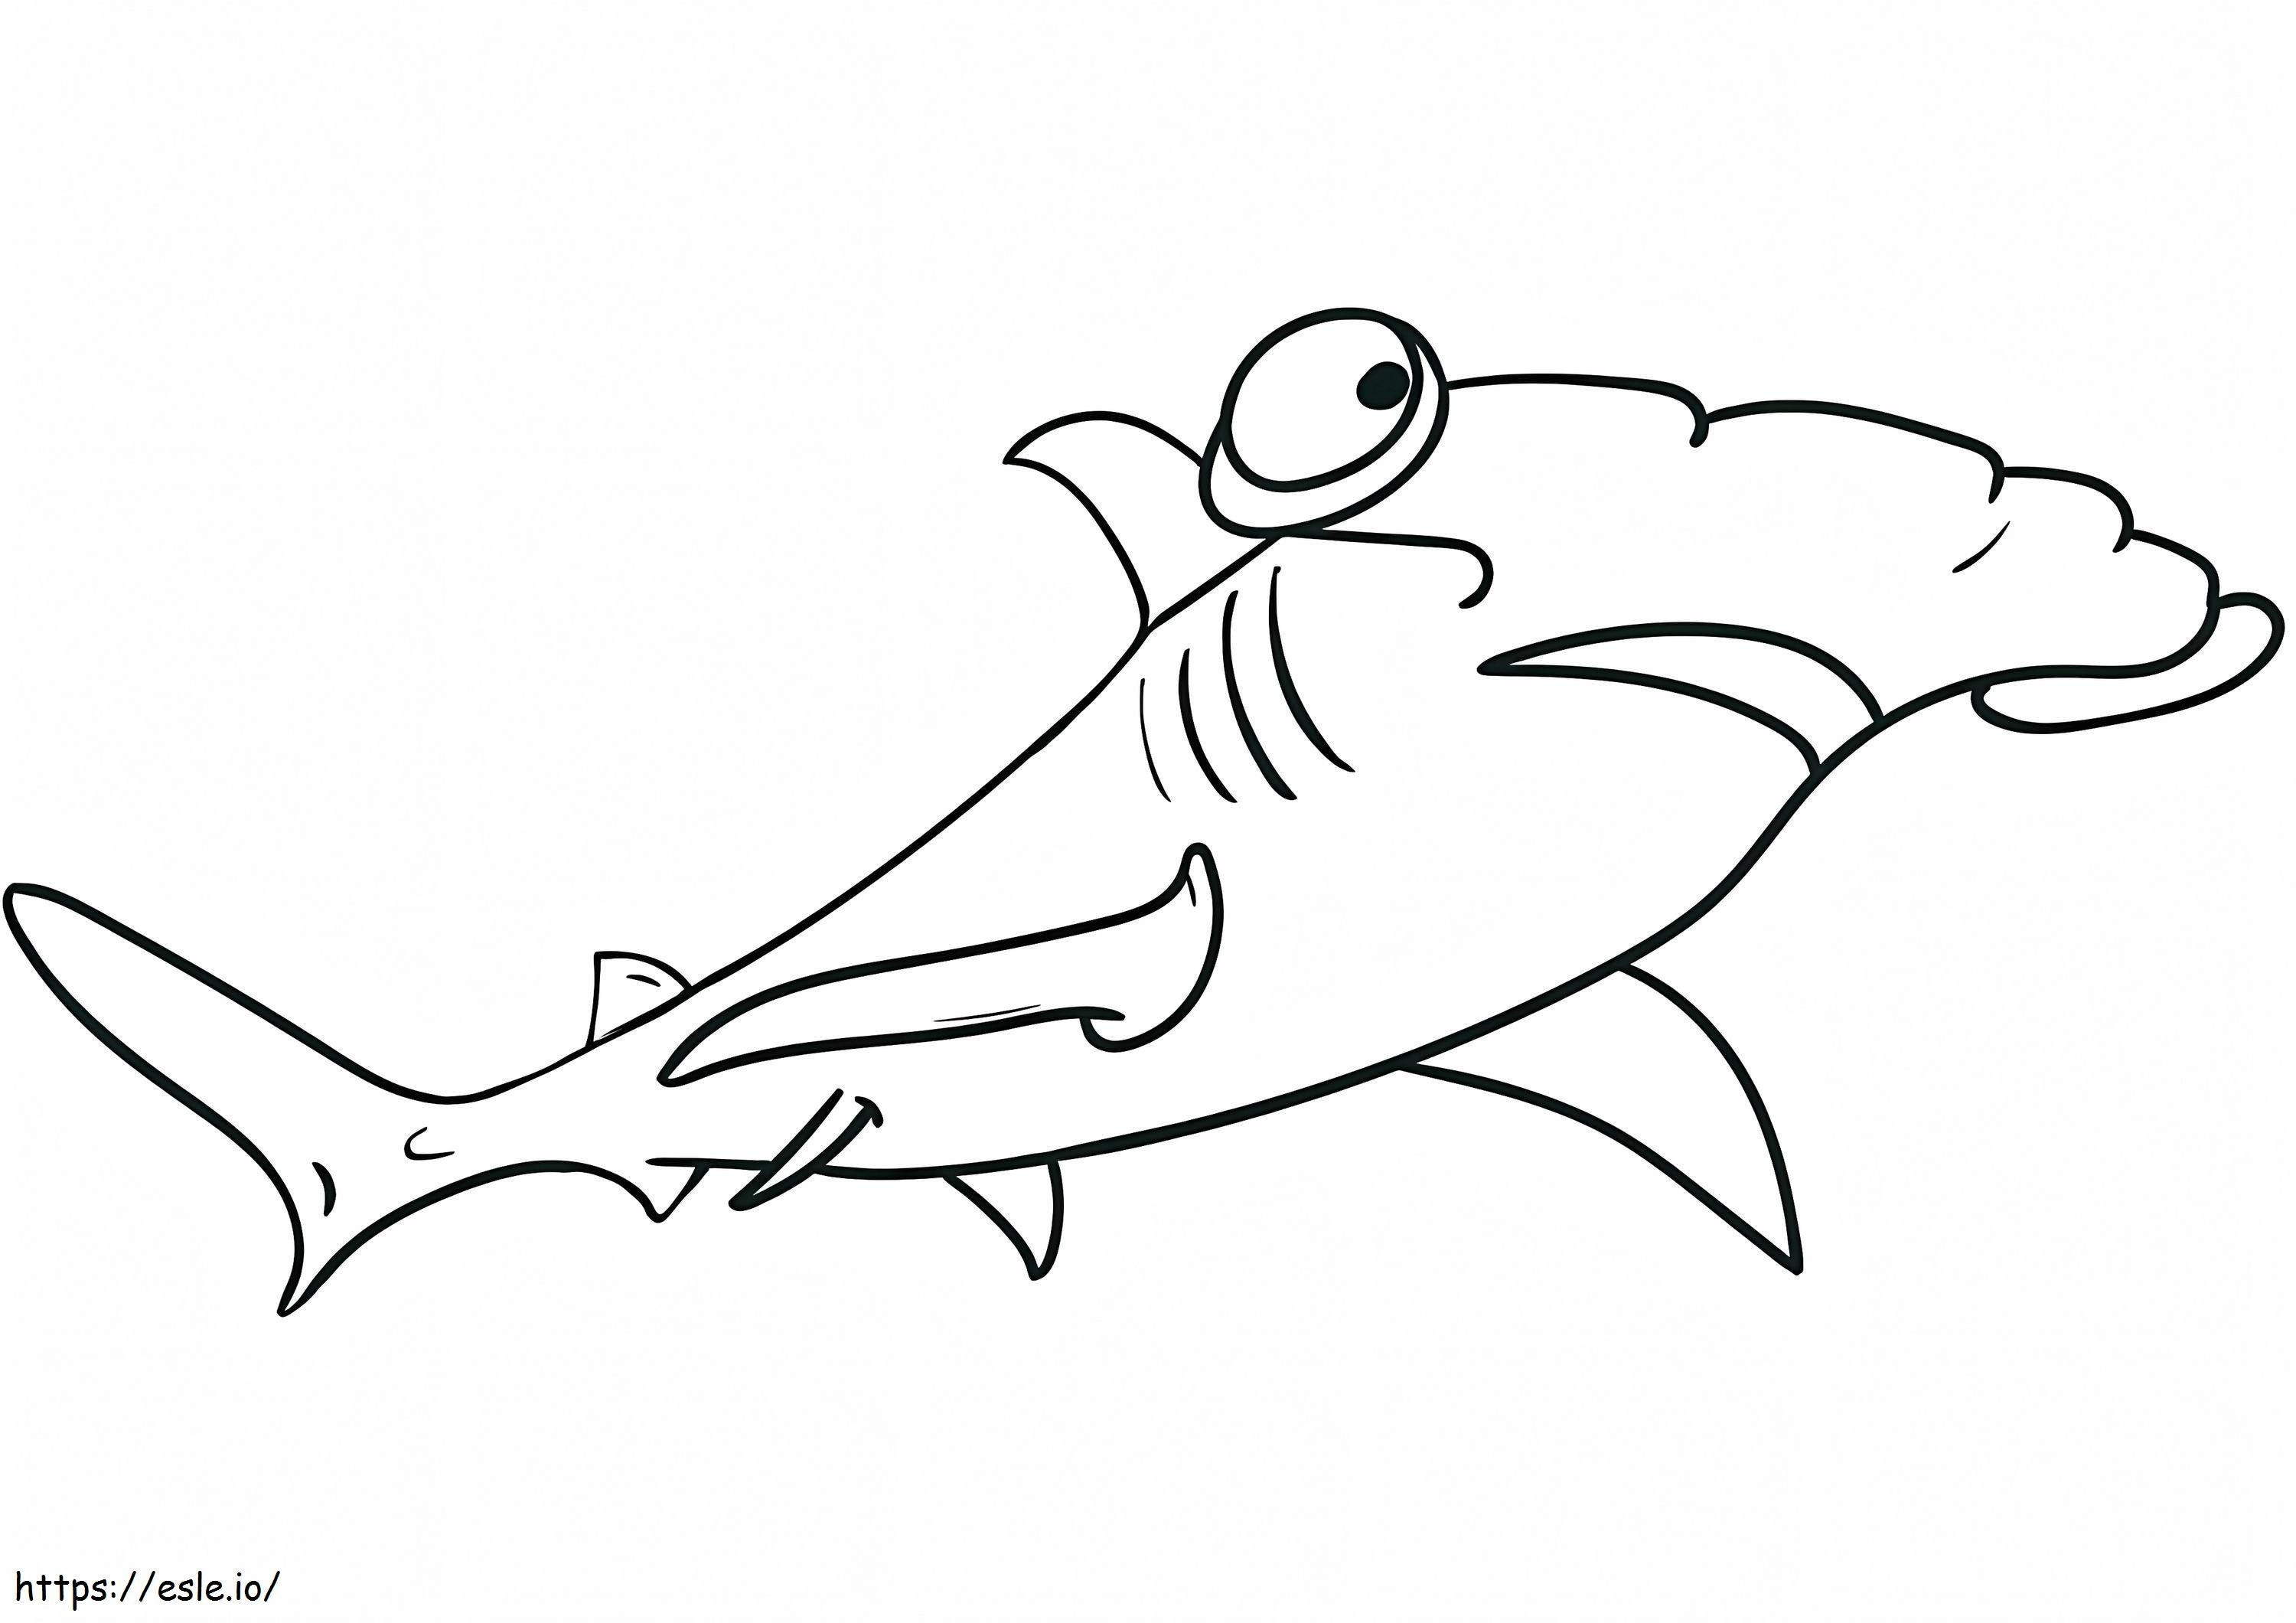 Simpatico squalo martello da colorare